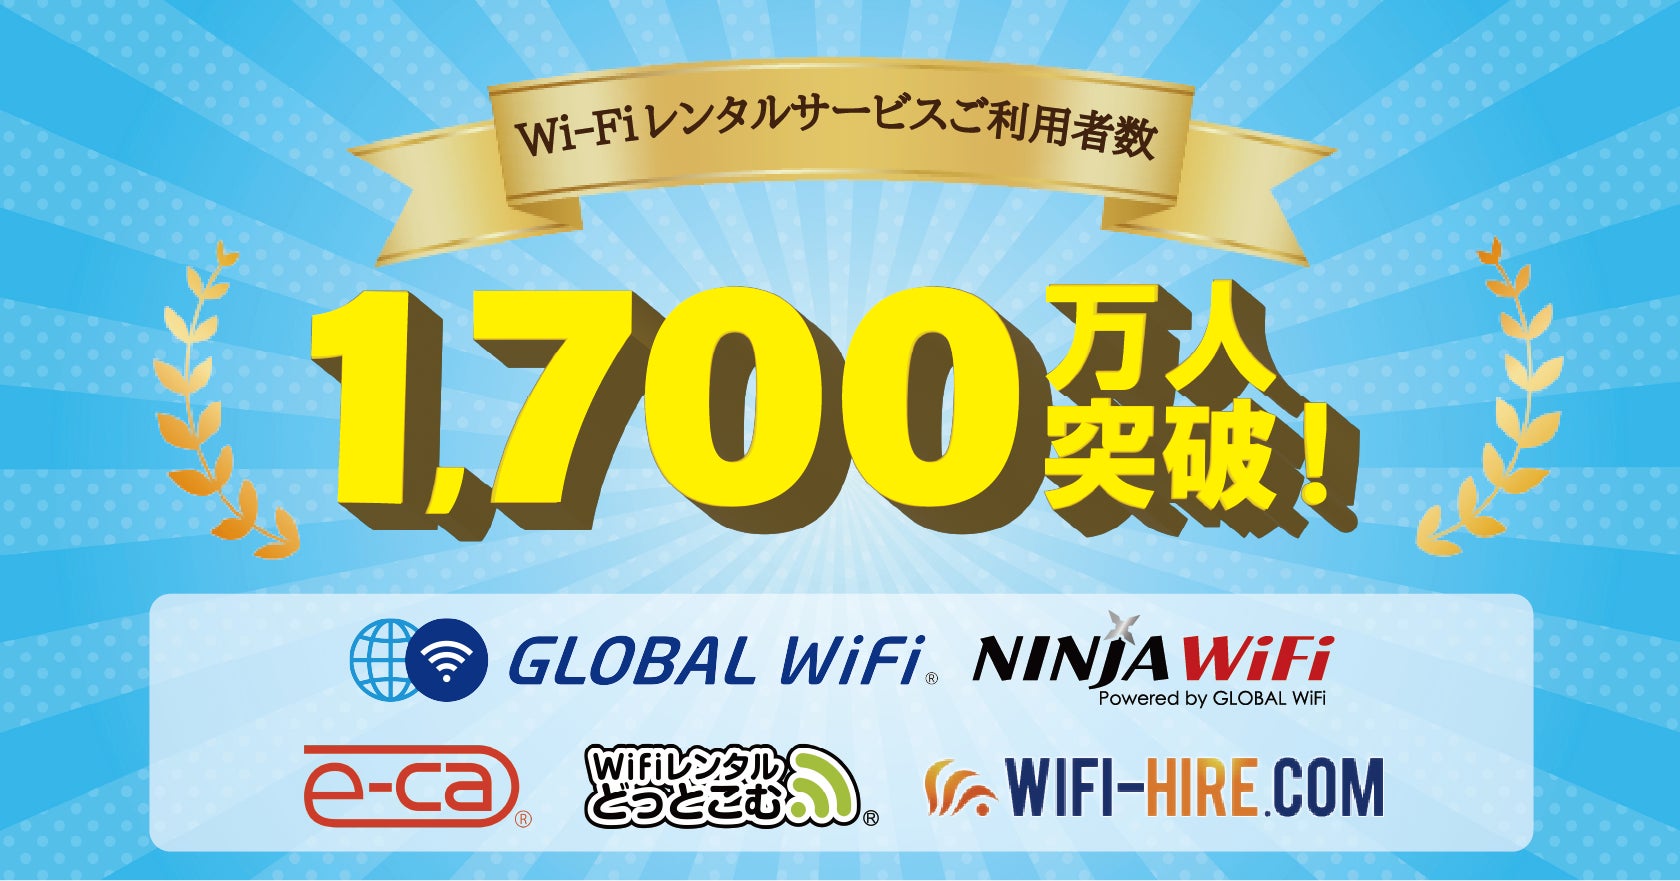 Wi-Fiルーターレンタルサービスご利用者累計1,700万人突破！